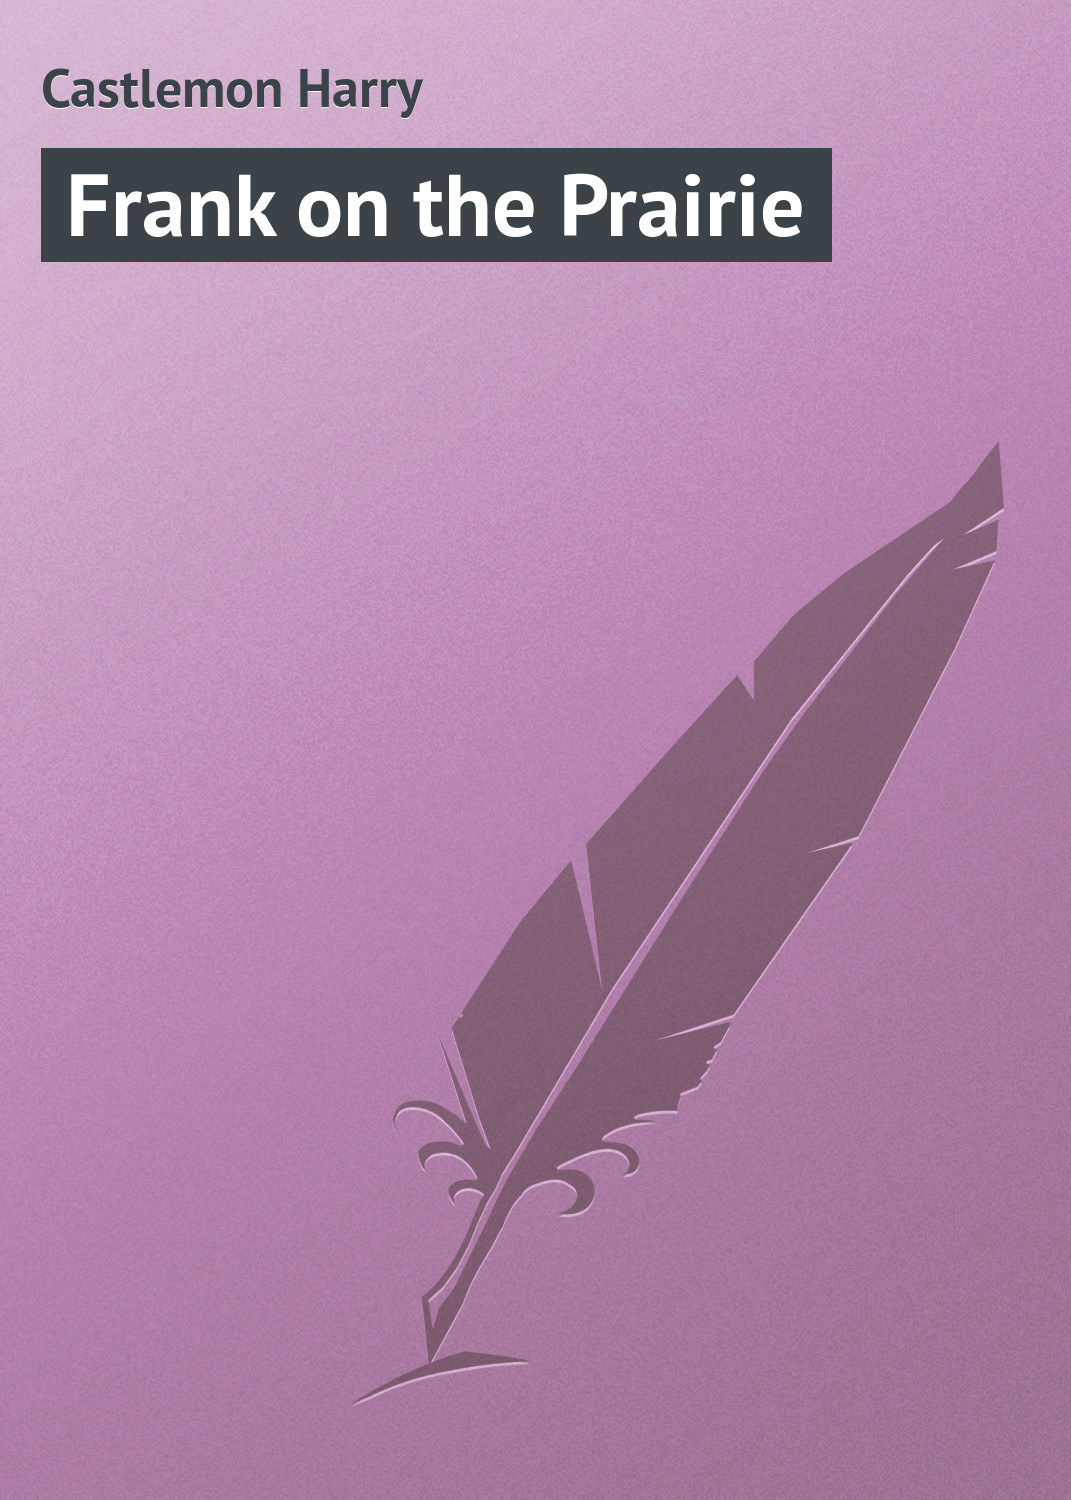 Книга Frank on the Prairie из серии , созданная Harry Castlemon, может относится к жанру Зарубежная классика, Зарубежные детские книги. Стоимость электронной книги Frank on the Prairie с идентификатором 23154971 составляет 5.99 руб.